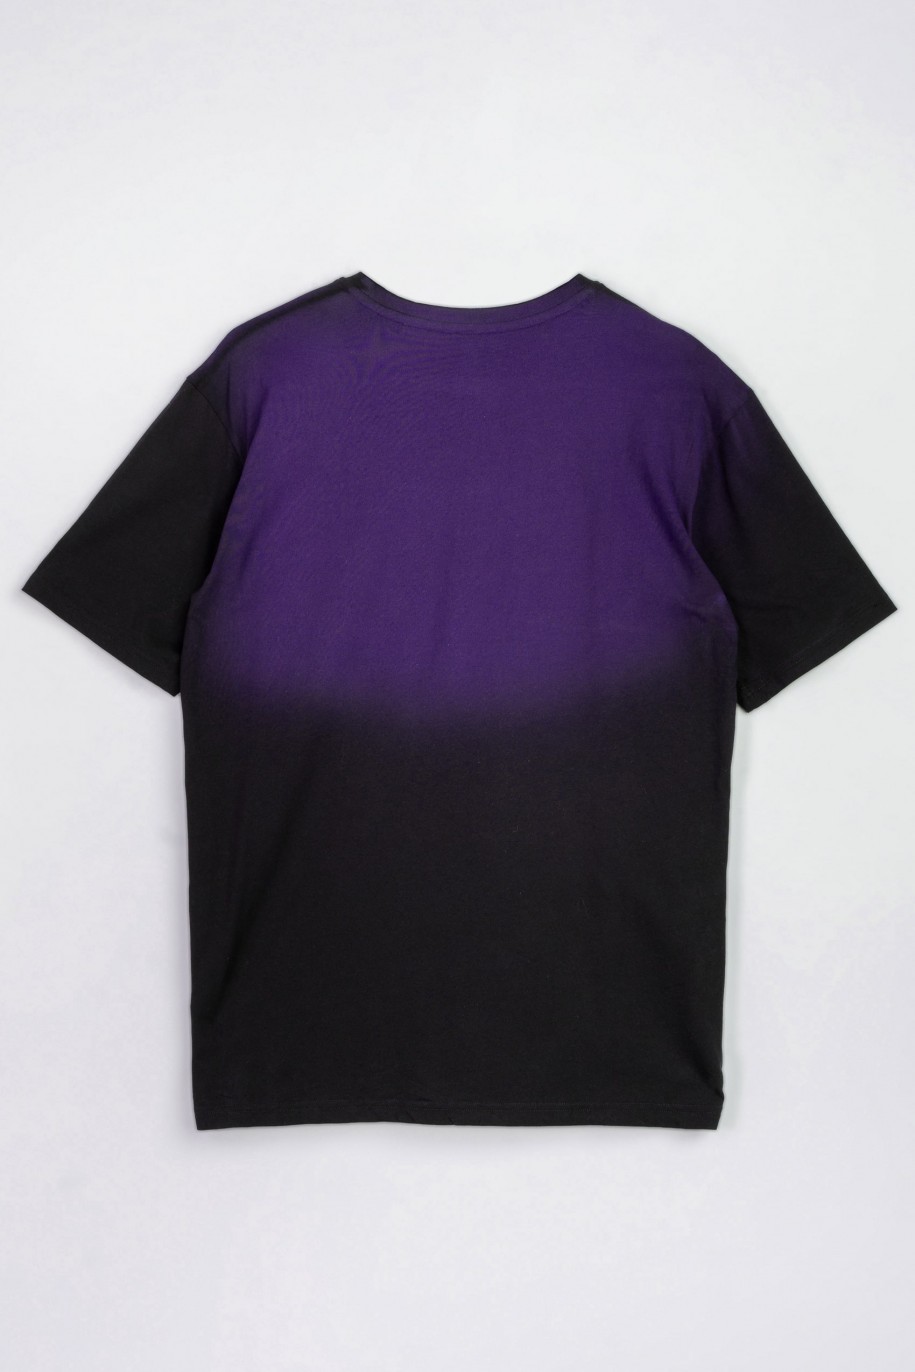 Czarny t-shirt z fioletowym nadrukiem imitującym cieniowanie - 47543